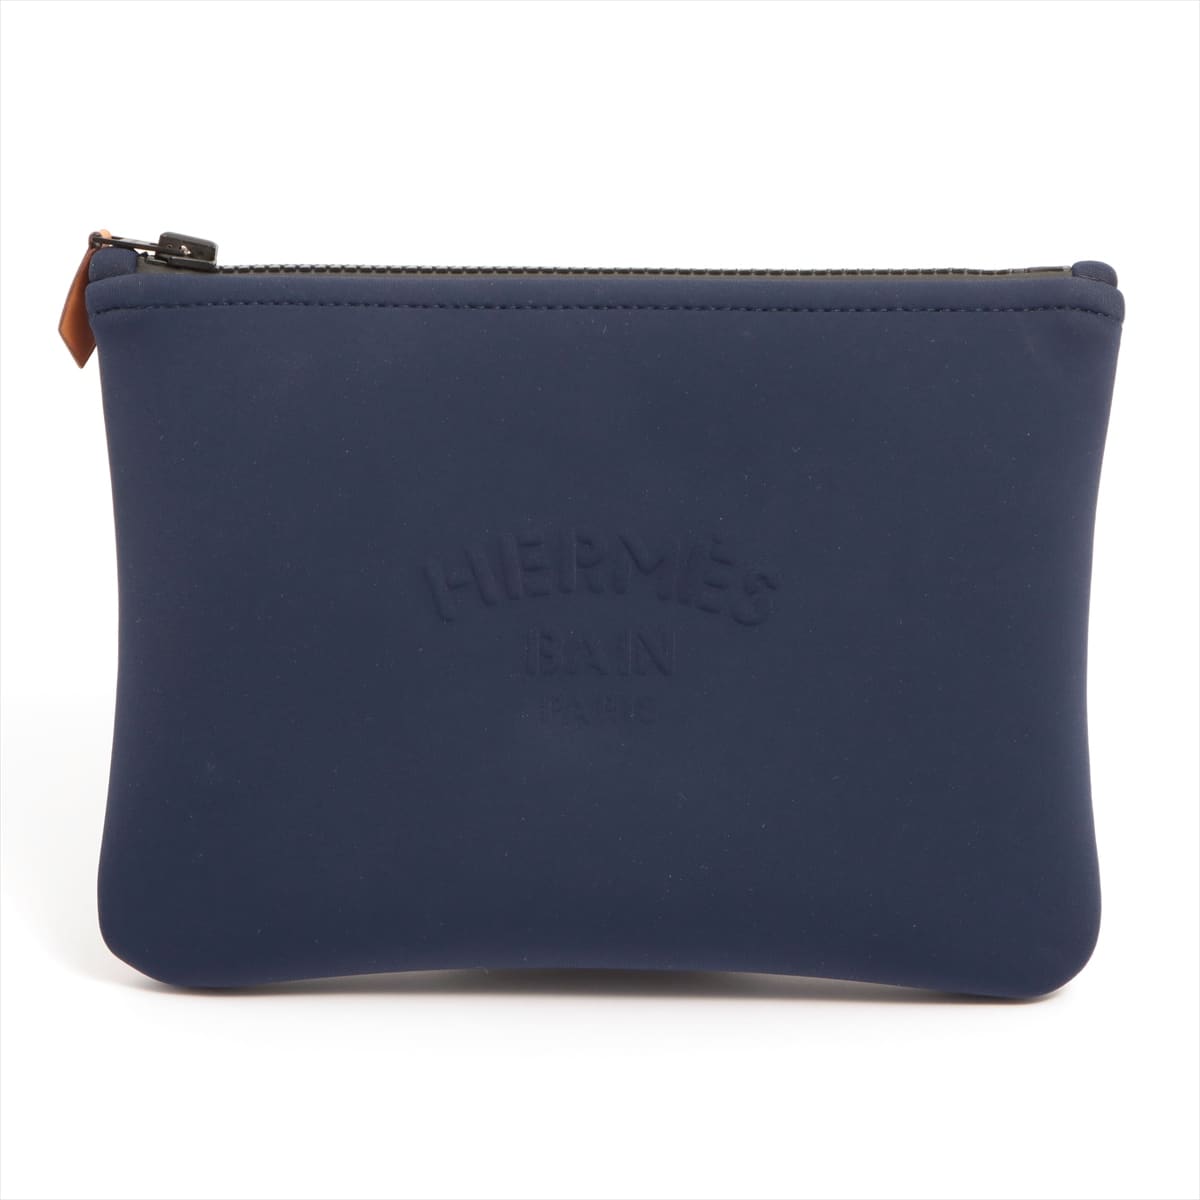 Hermès Toulouse Flat PM Polyamide x elastane Pouch Navy blue Black hardware